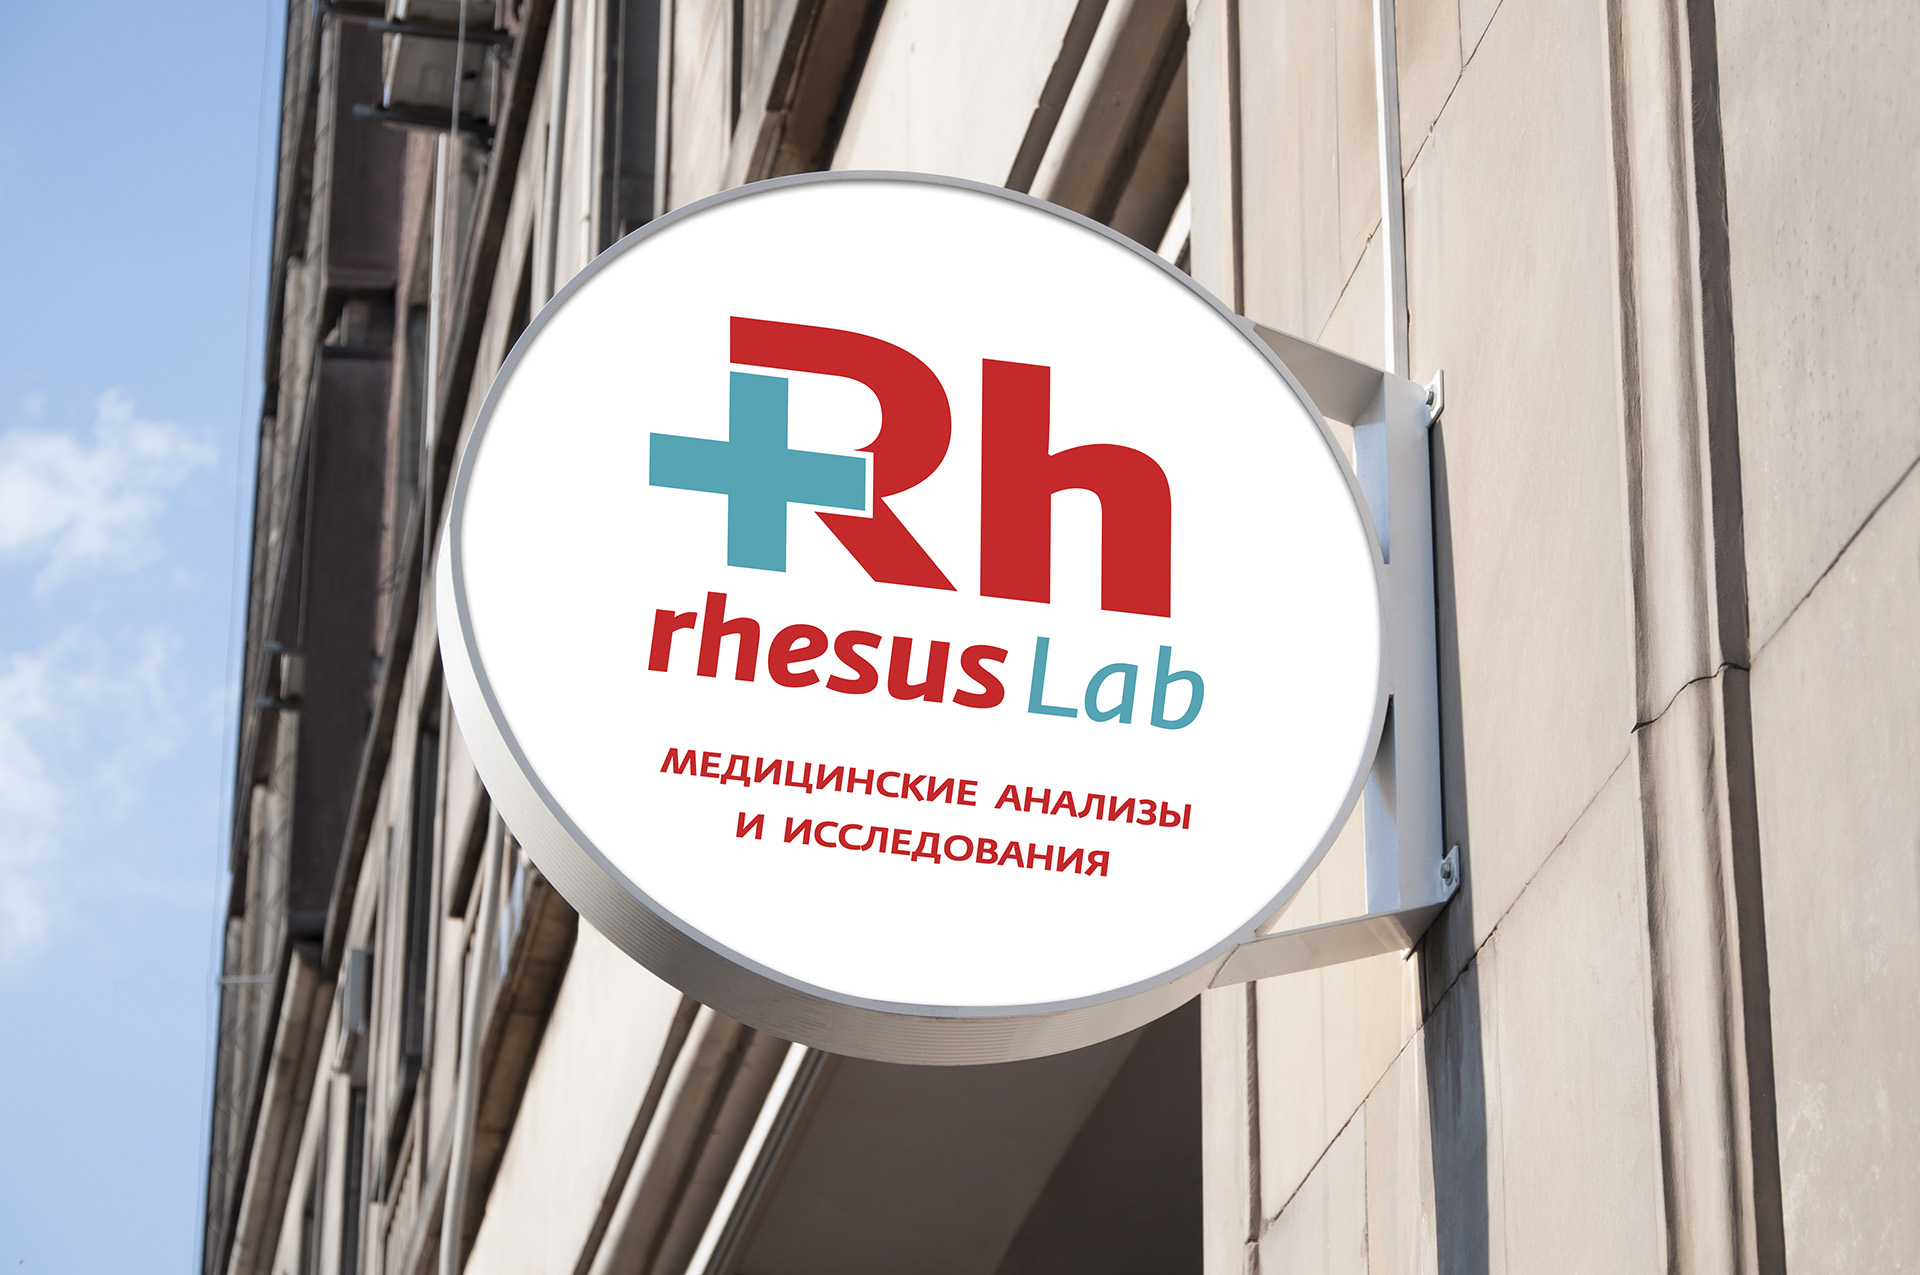 Resus Lab - лаборатория анализов design вывески